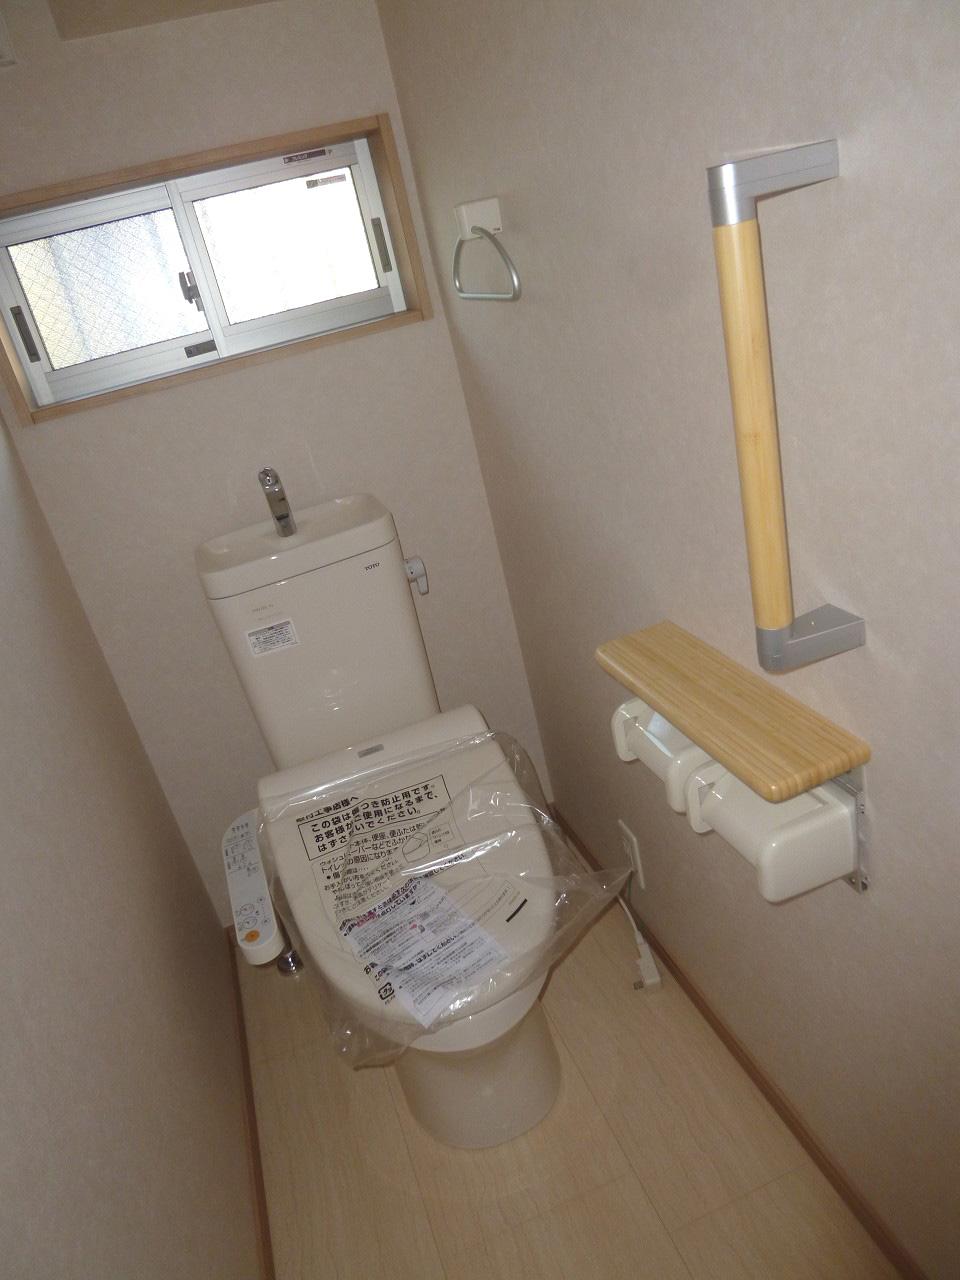 Toilet.  ◆ Washlet with ◆ 